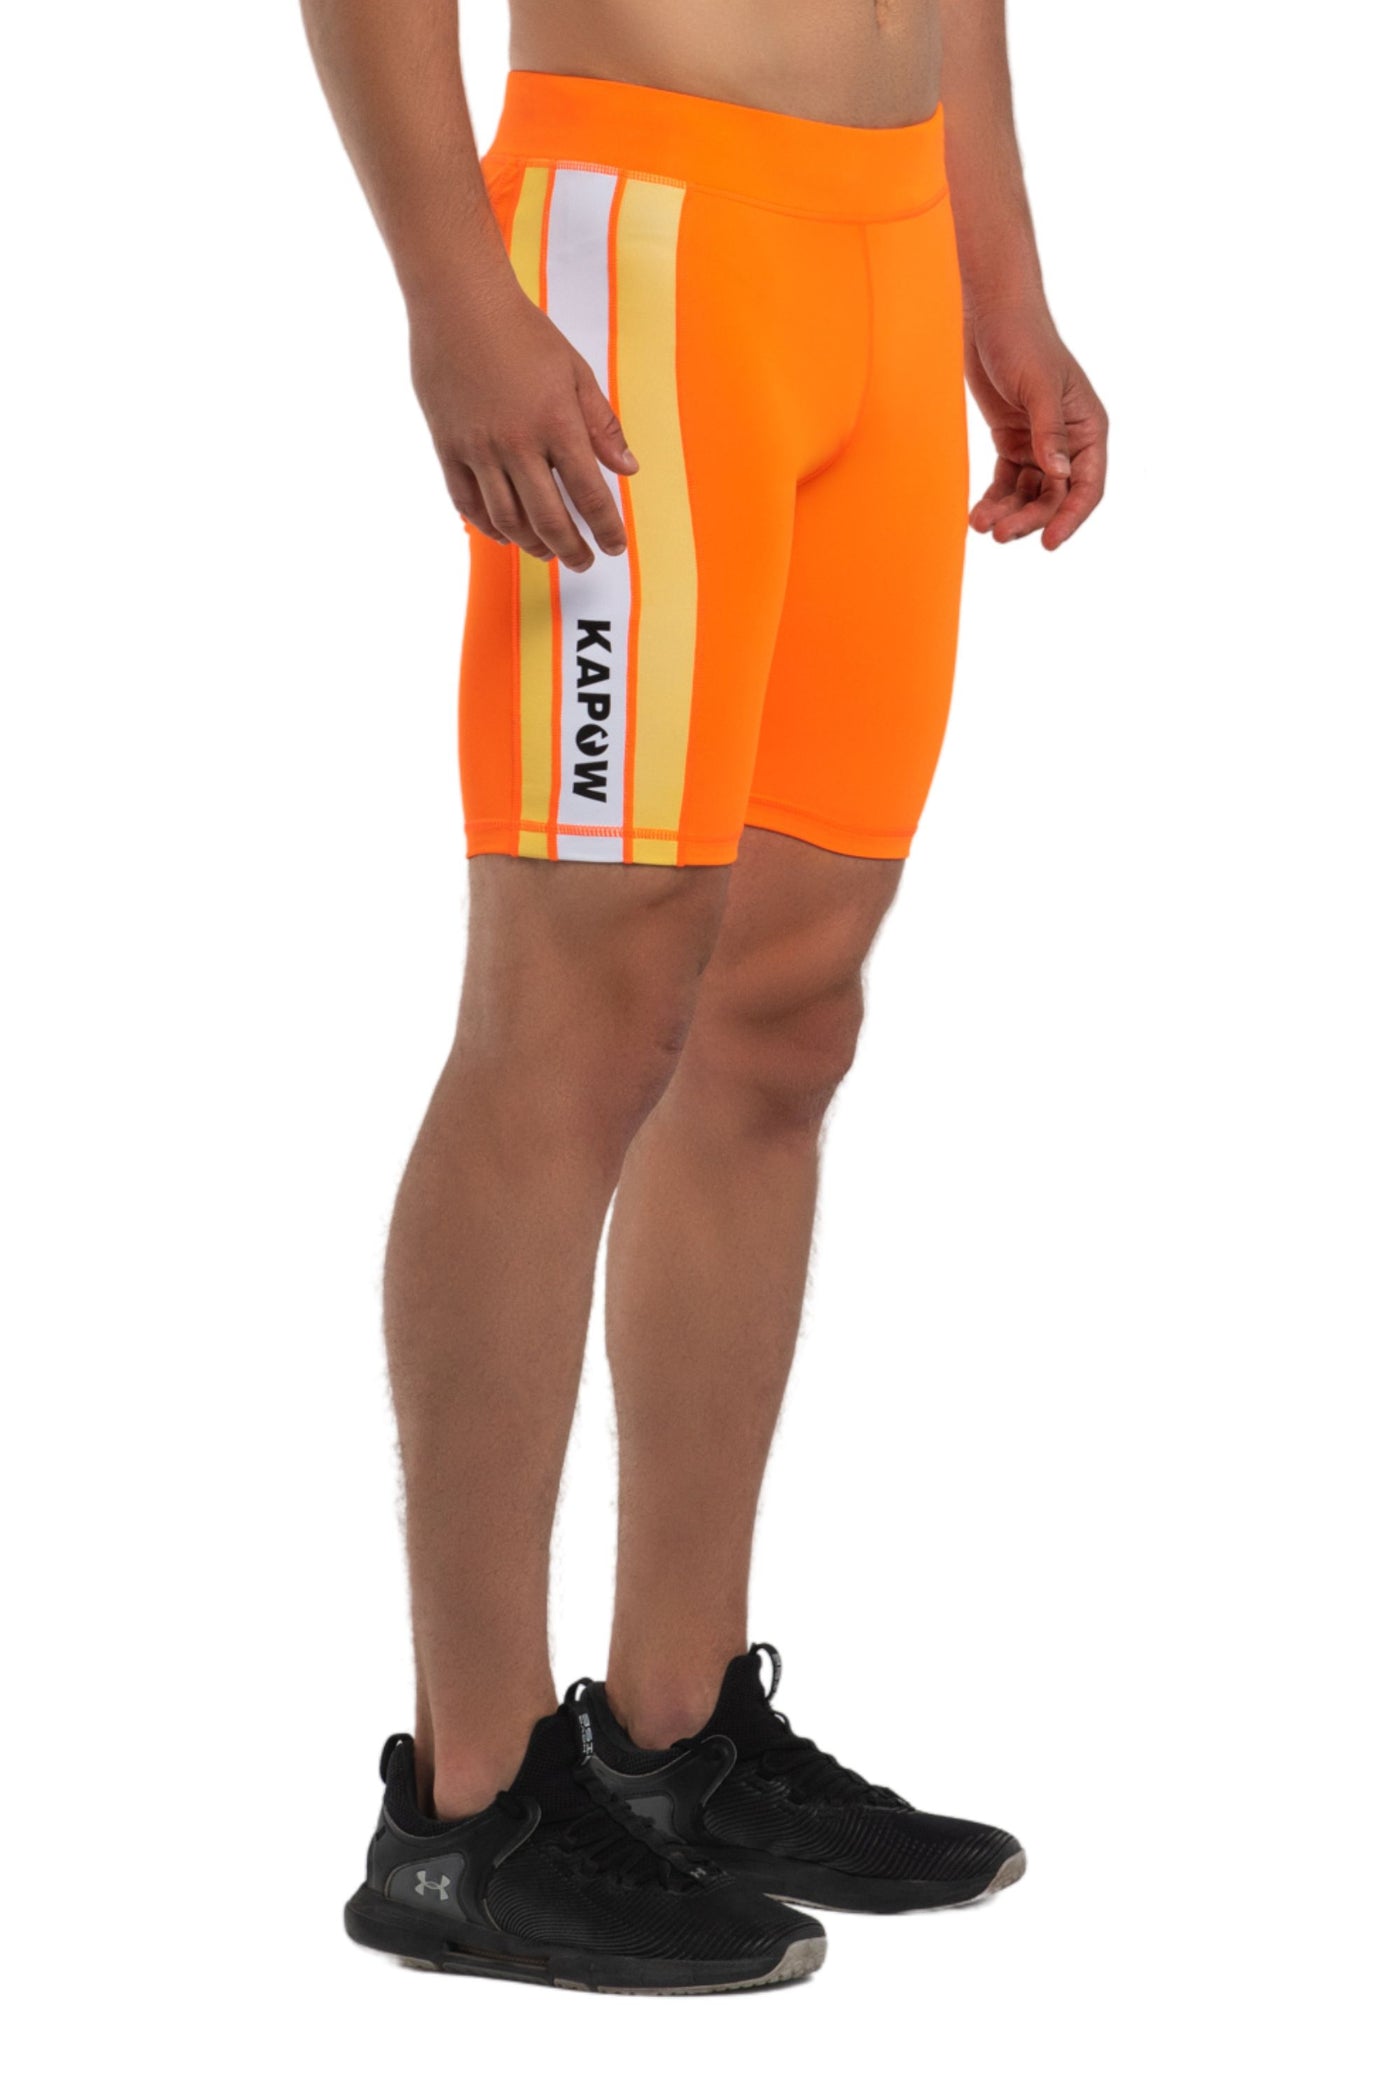 Nitro Men's Compression Shorts l Orange l Kapow Meggings